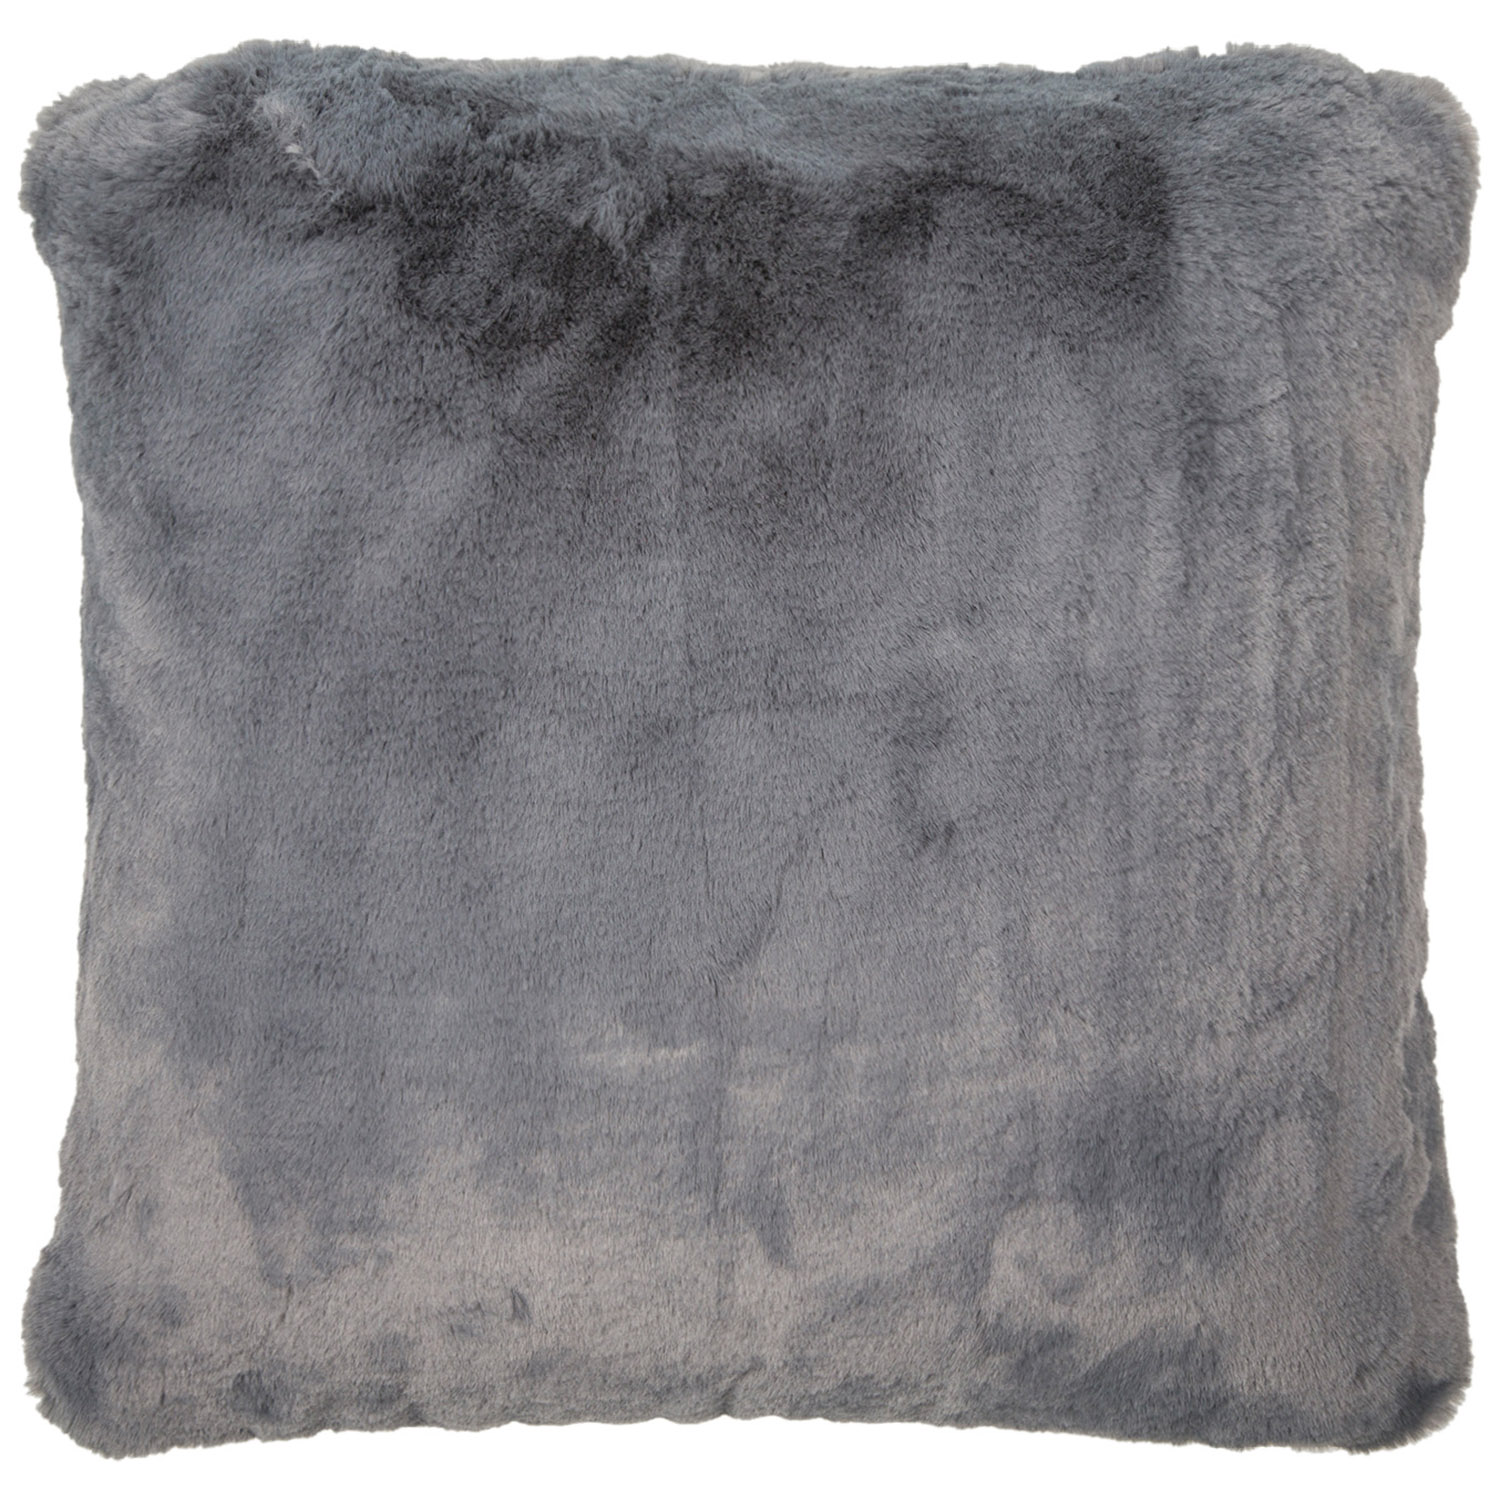 Divante Grey Rabbit Faux Fur Cushion 45 x 45cm Image